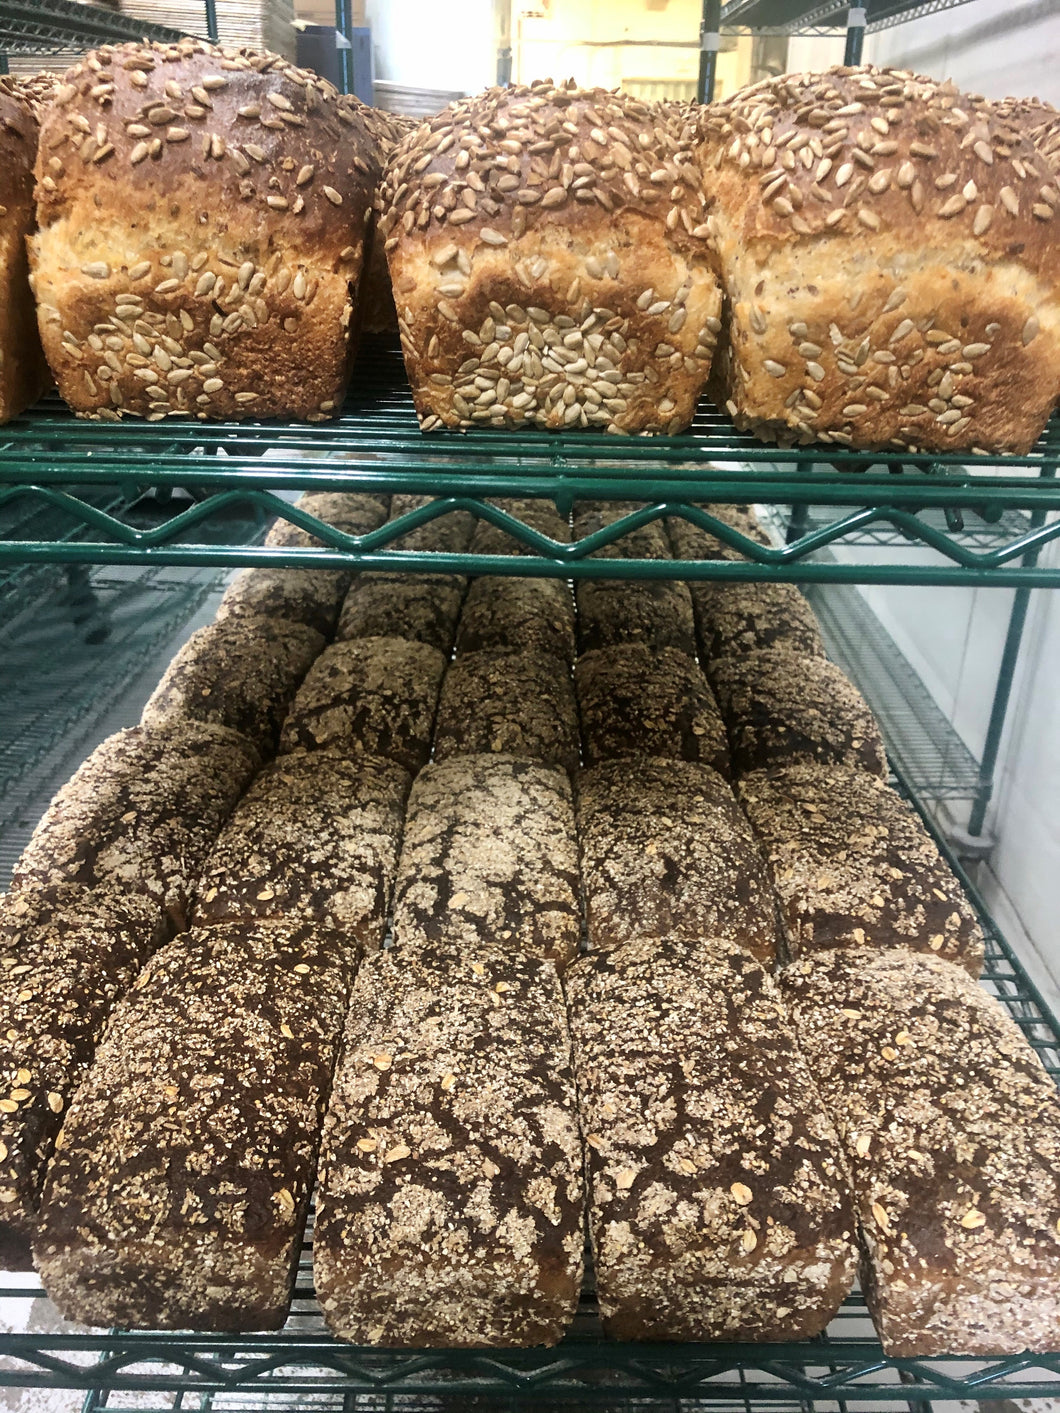 Daily Bread Bundle